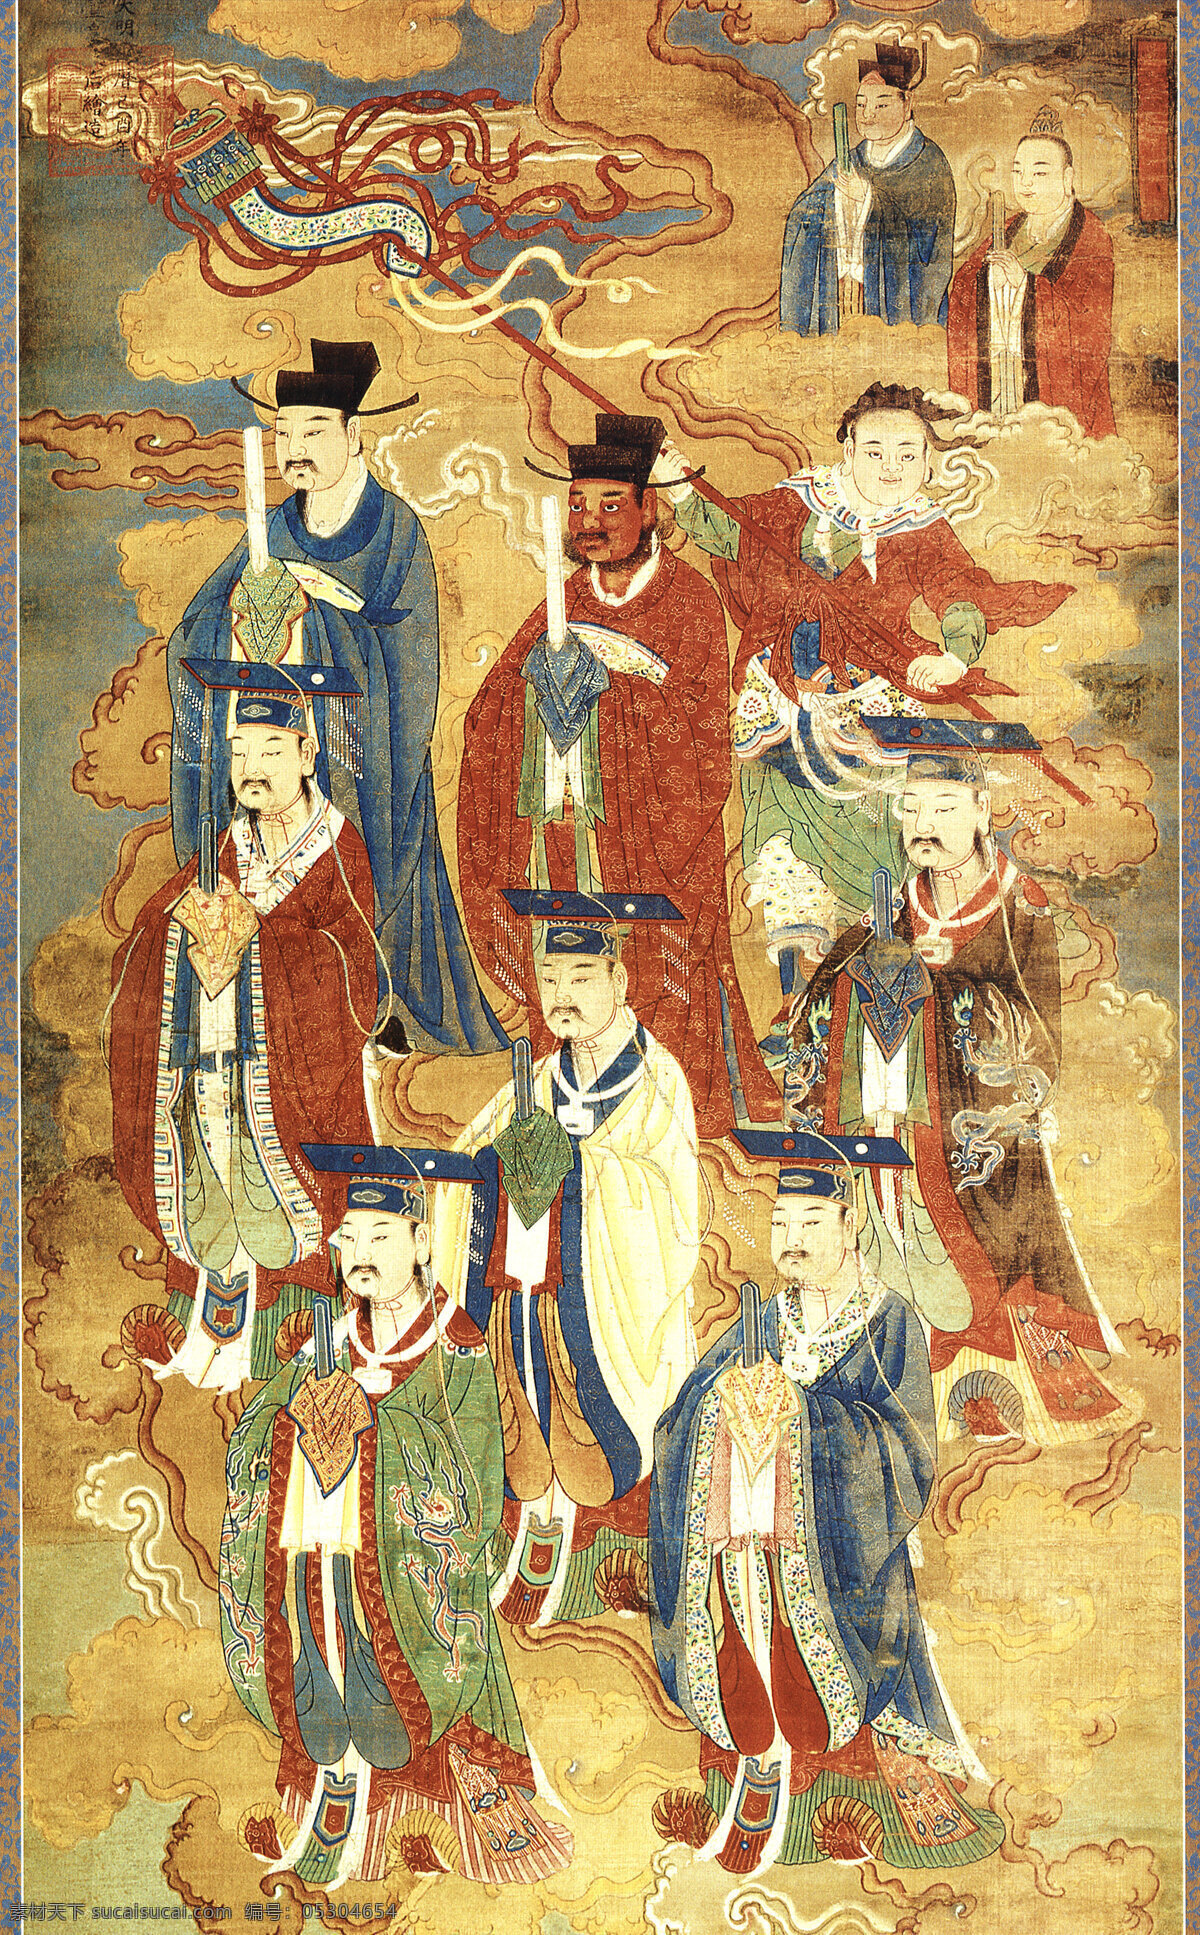 五岳上帝像 佛教图片 国画 工笔 人物 佛教人物 神仙图 文化艺术 绘画书法 设计图库